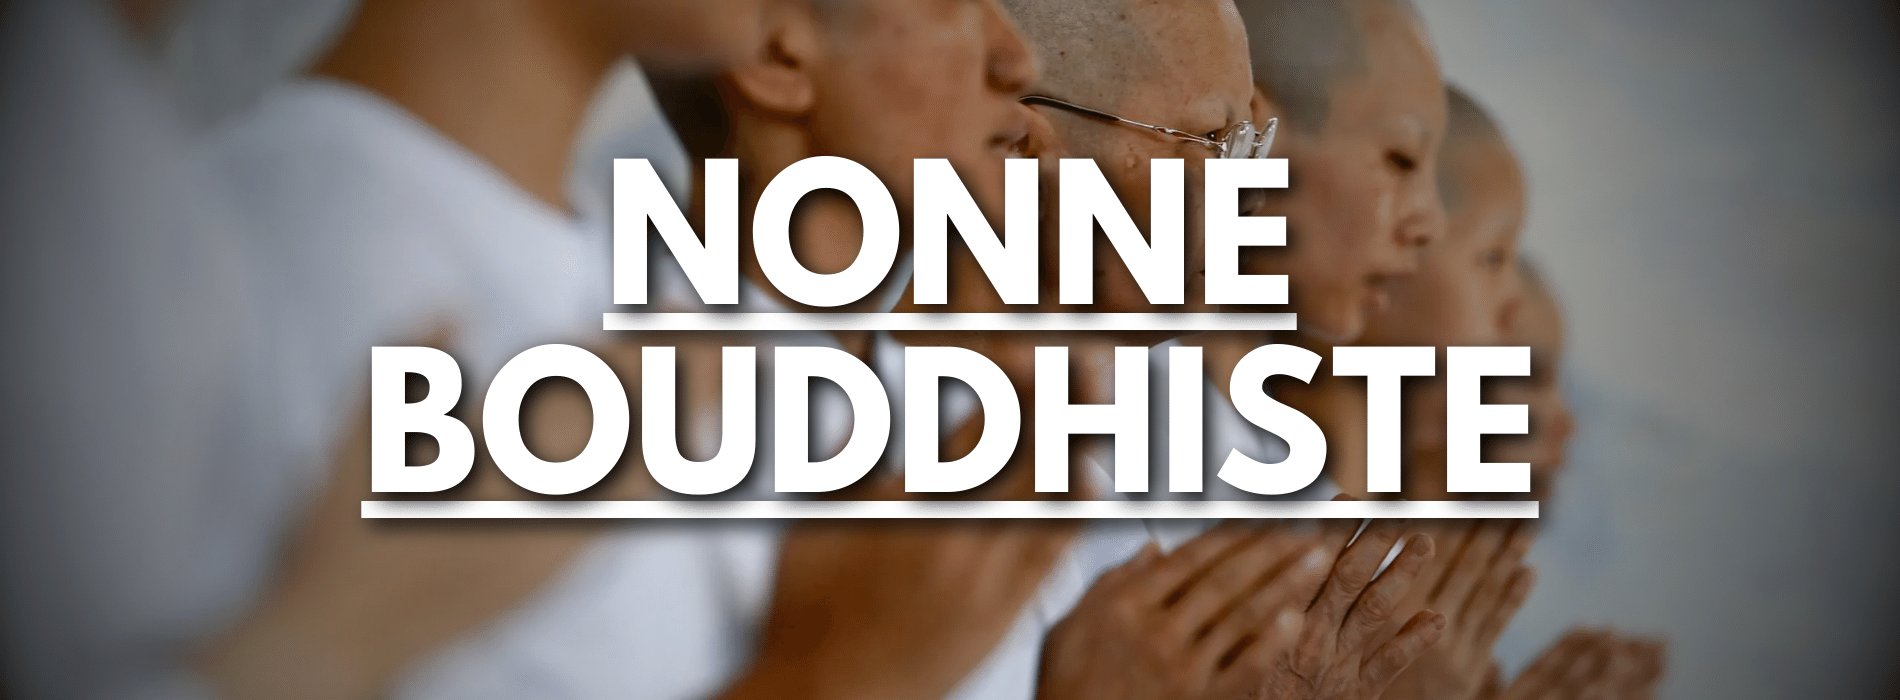 comment-devenir-nonne-bouddhiste